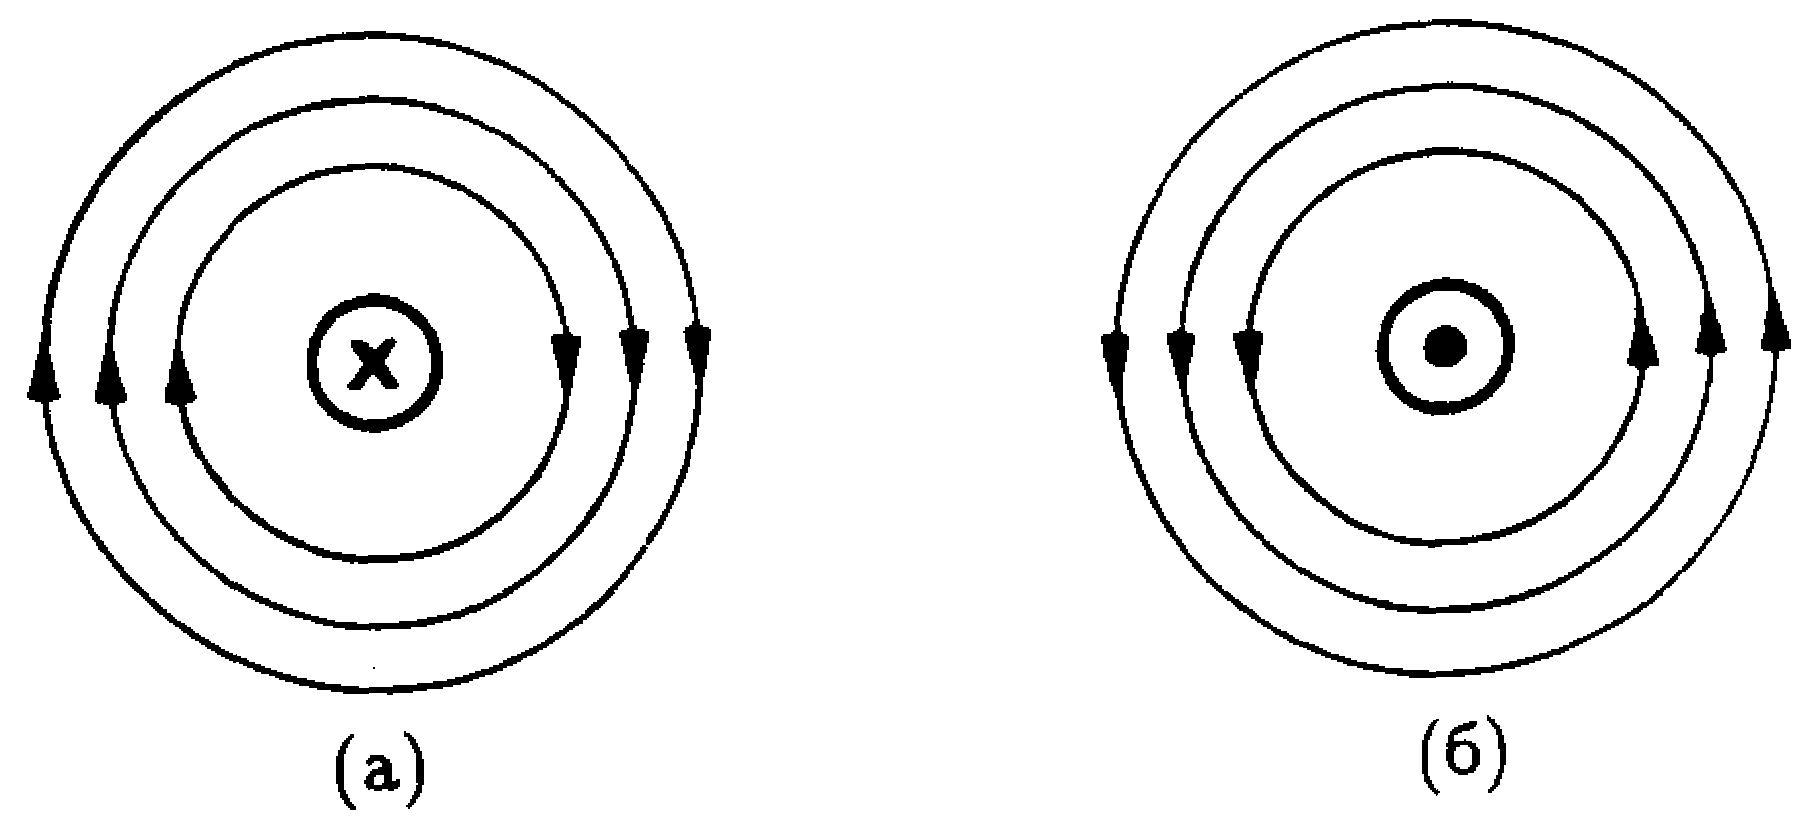 Определите направление магнитных линий стрелкой указано. Линии магнитной индукции прямого проводника. Линии магнитного поля проводника с током. Направление магнитного поля вокруг проводника. Направление линий магнитного поля прямого проводника с током.